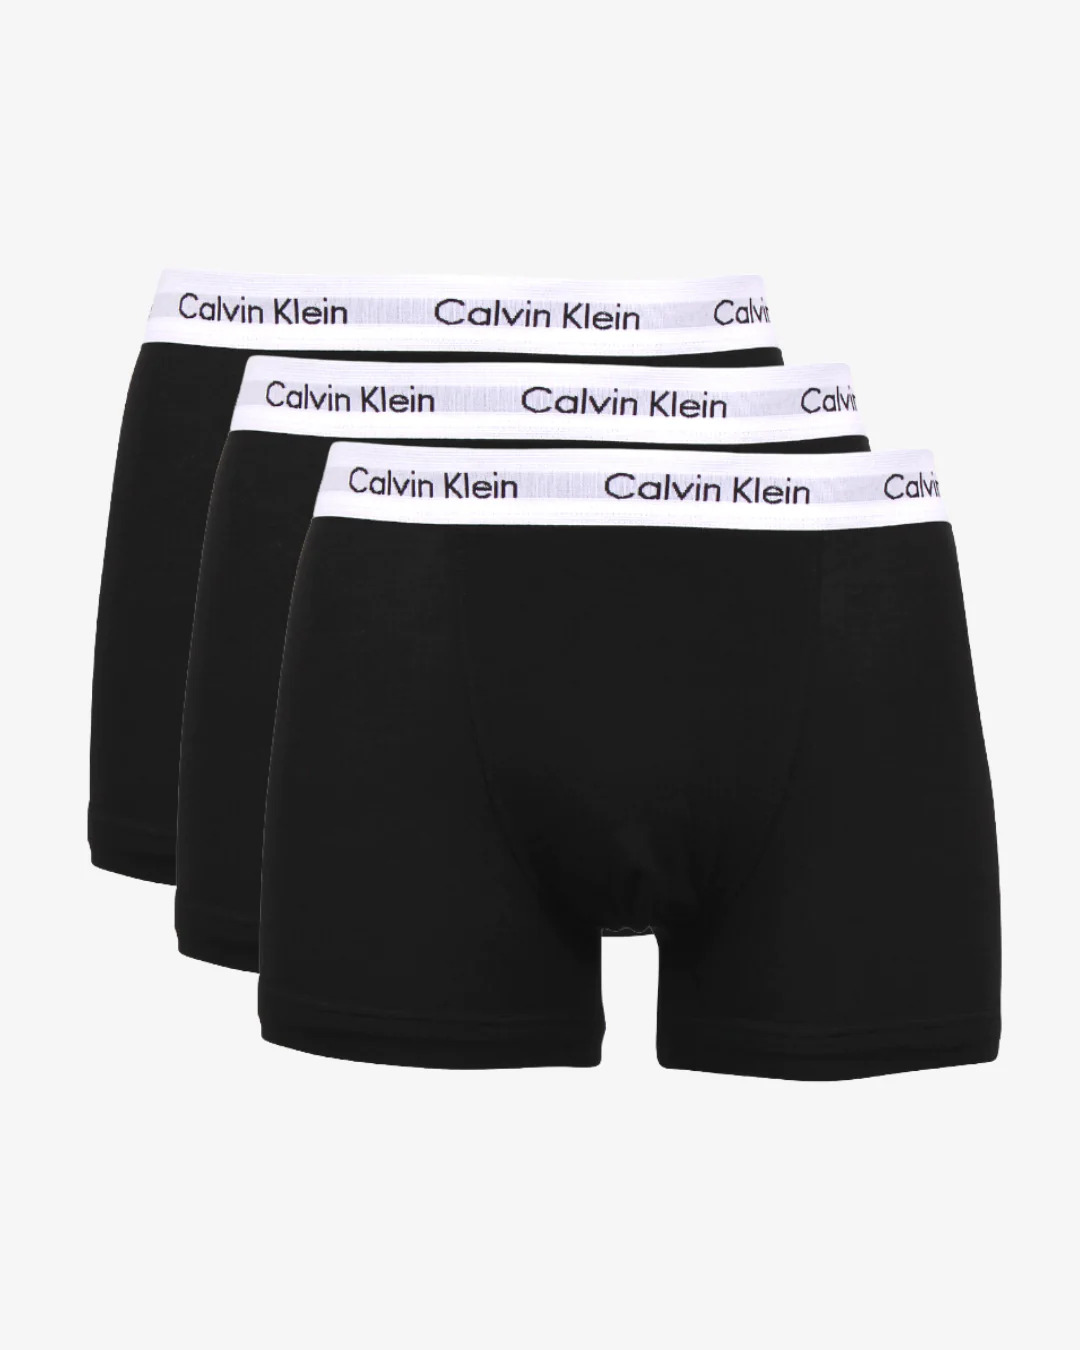 Billede af Calvin Klein Underbukser 3 pak - Sort Large hos monomen